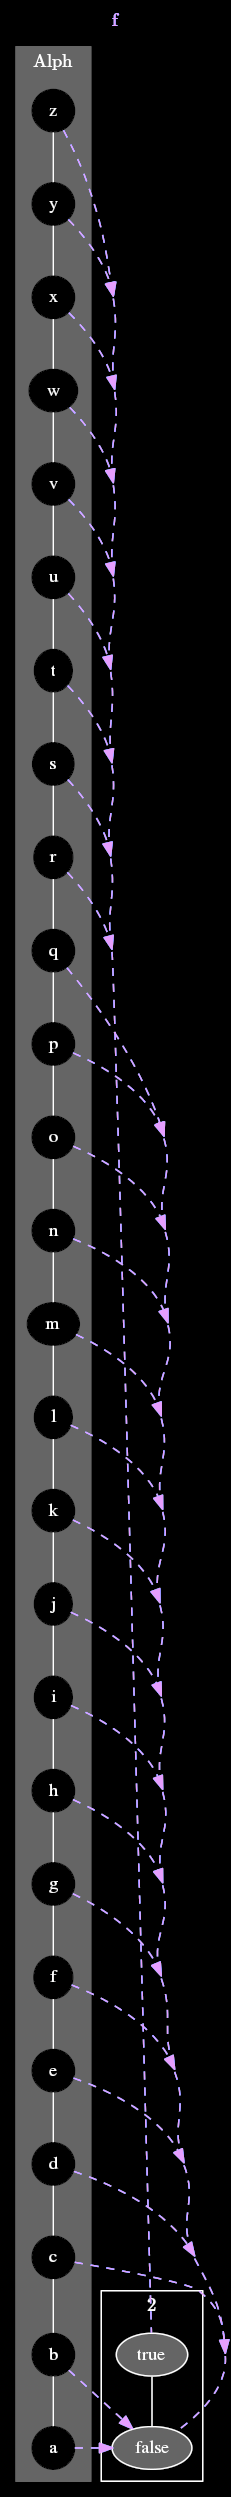 Diagram of f